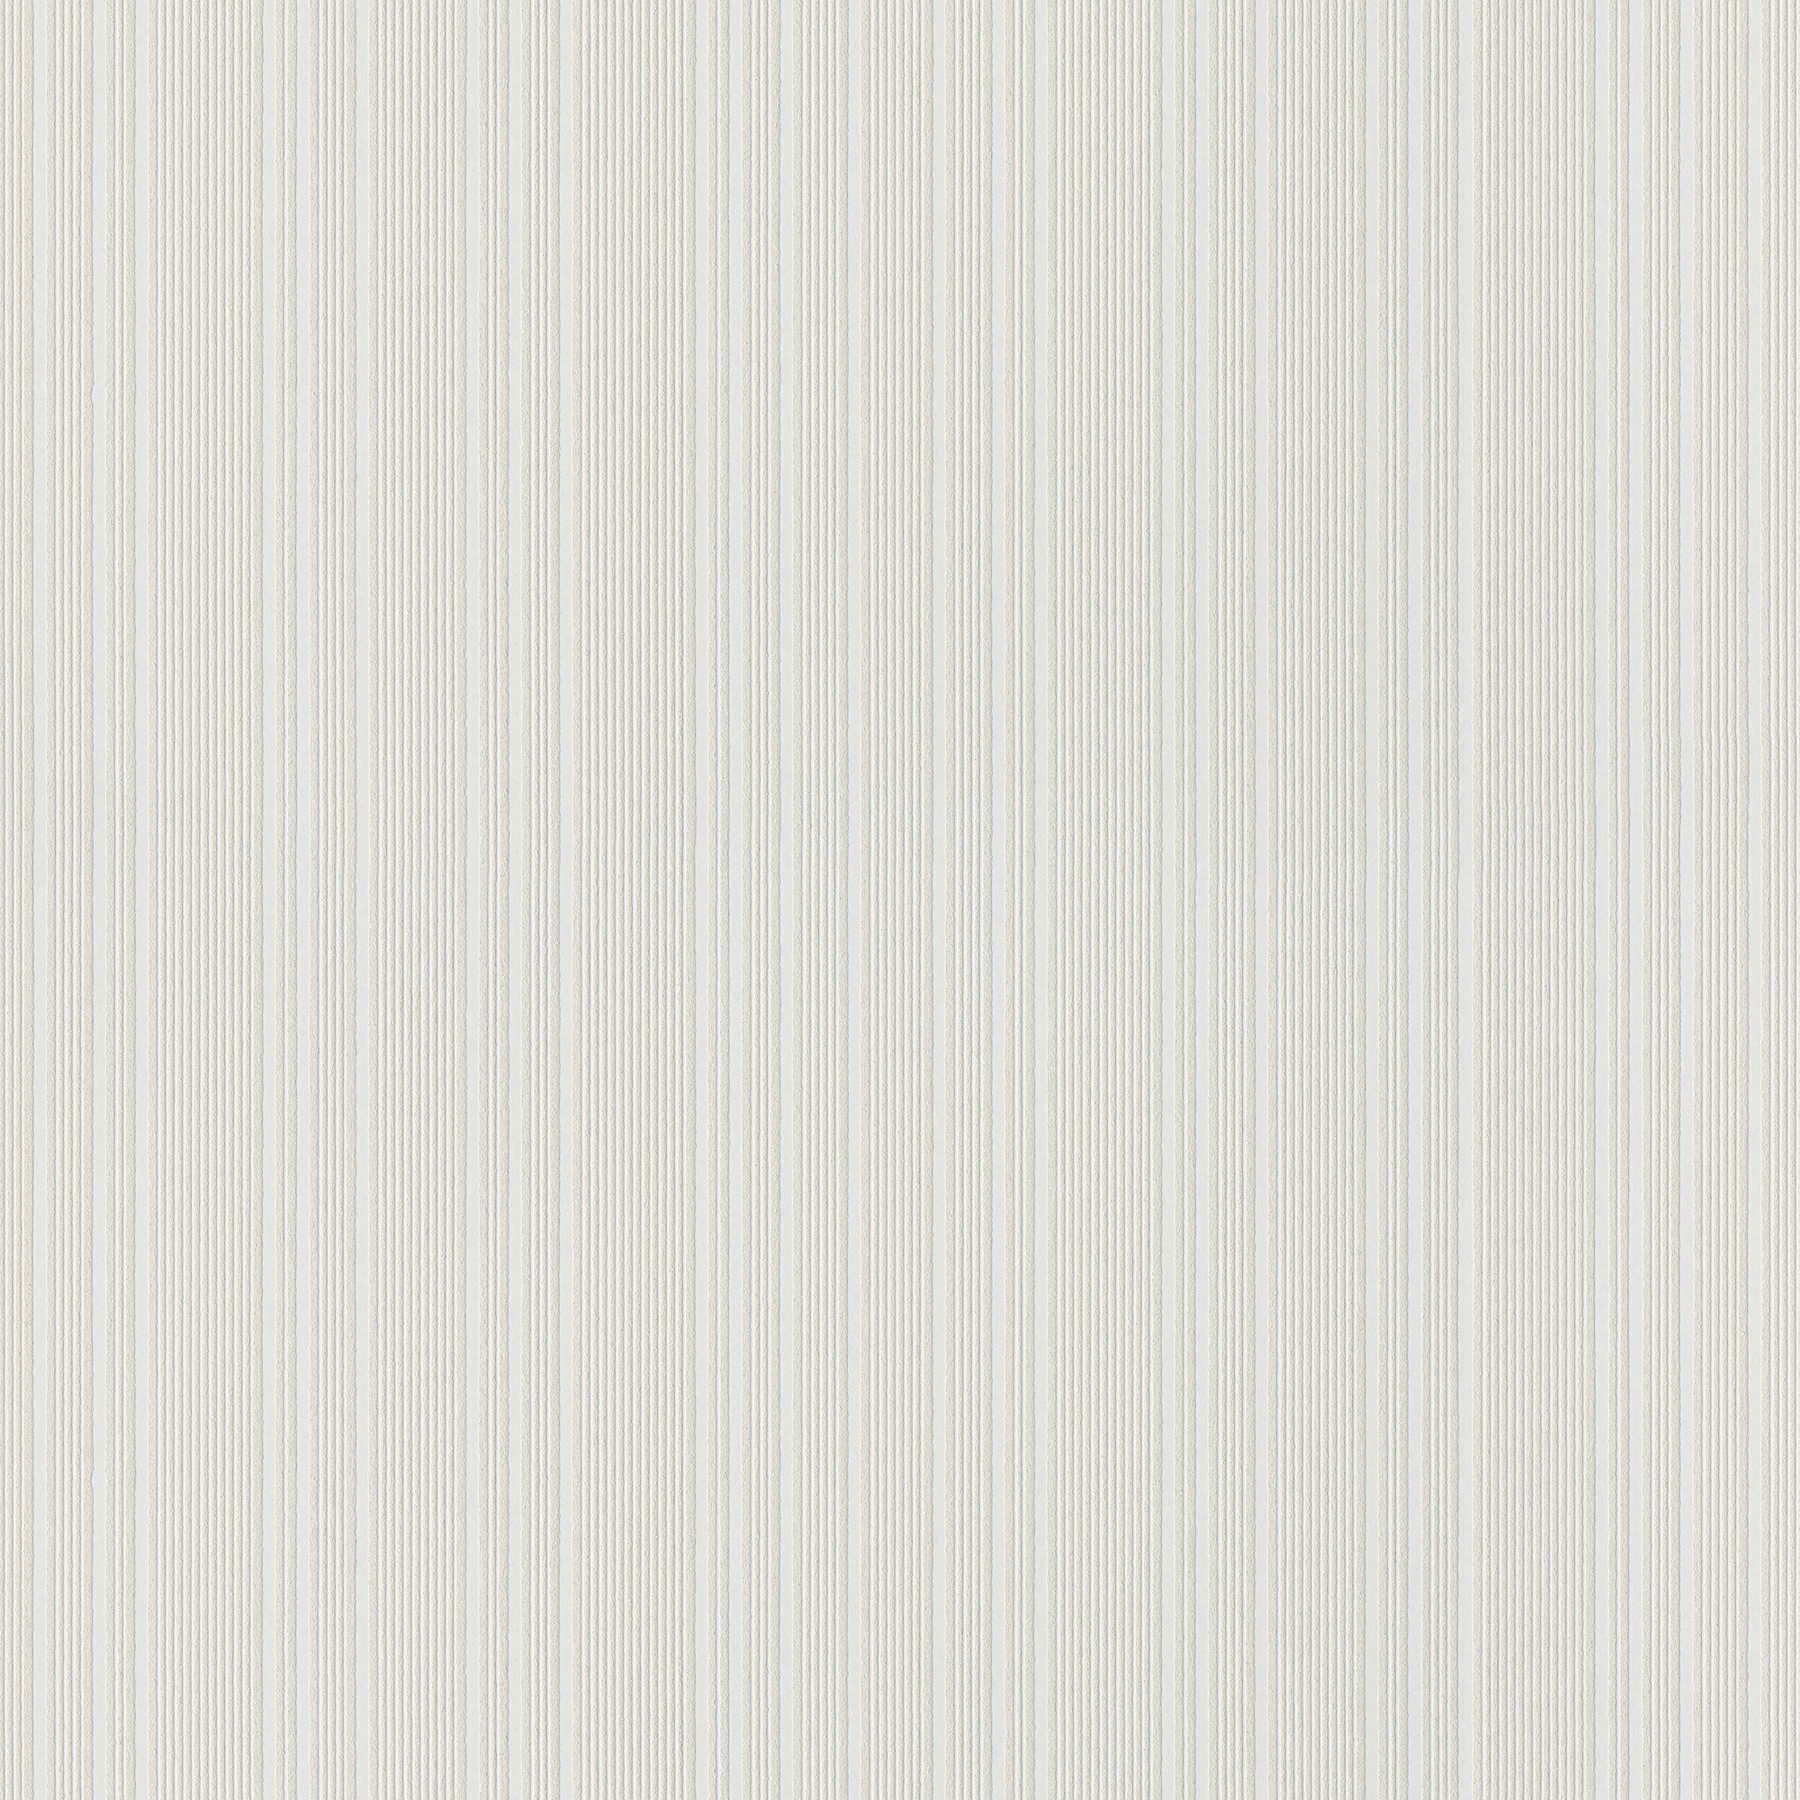 Carta da parati verniciabile in tessuto non tessuto con motivo a linee - bianco
